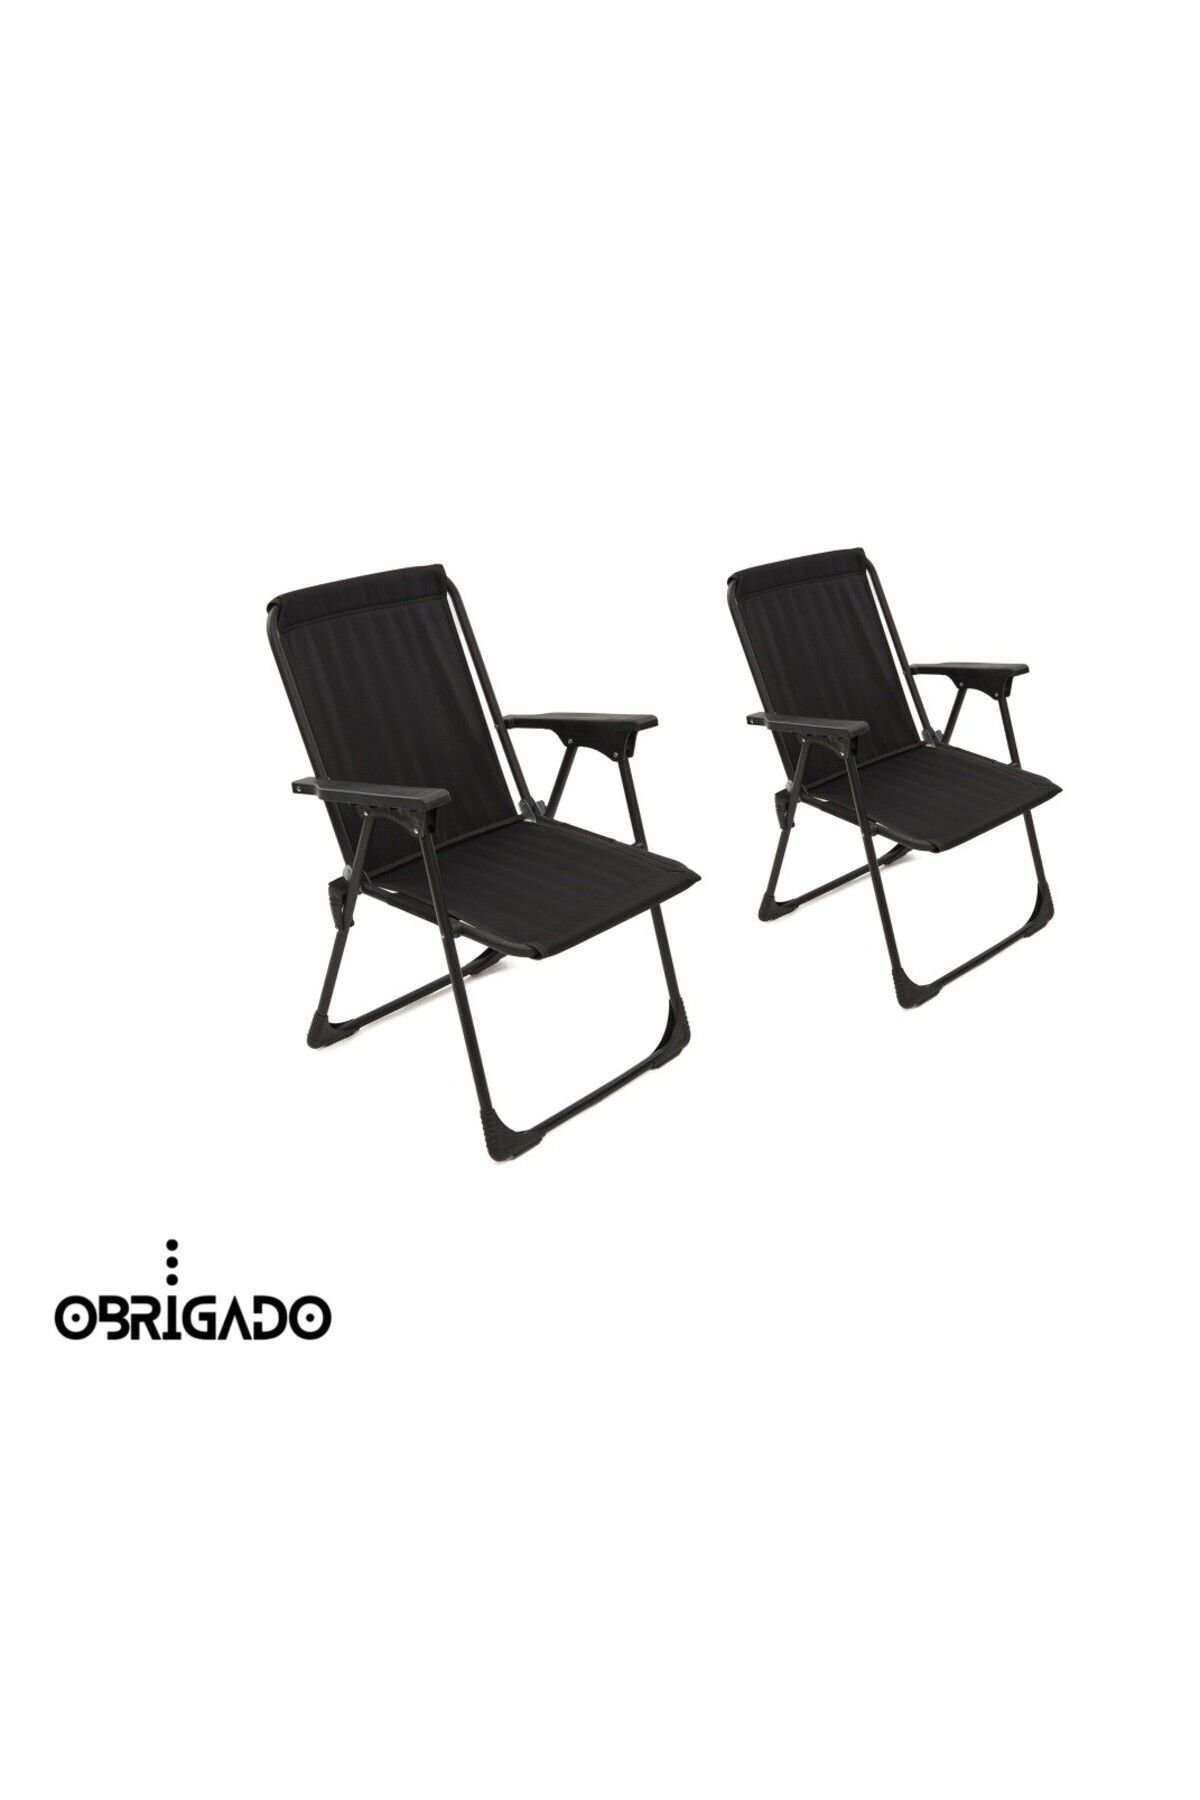 obrigado 2 Adet (İKİLİ) Katlanır Kamp Sandalye Piknik Bahçe Plaj Kullanılır Dayanıklı Ve Ergonomiktir